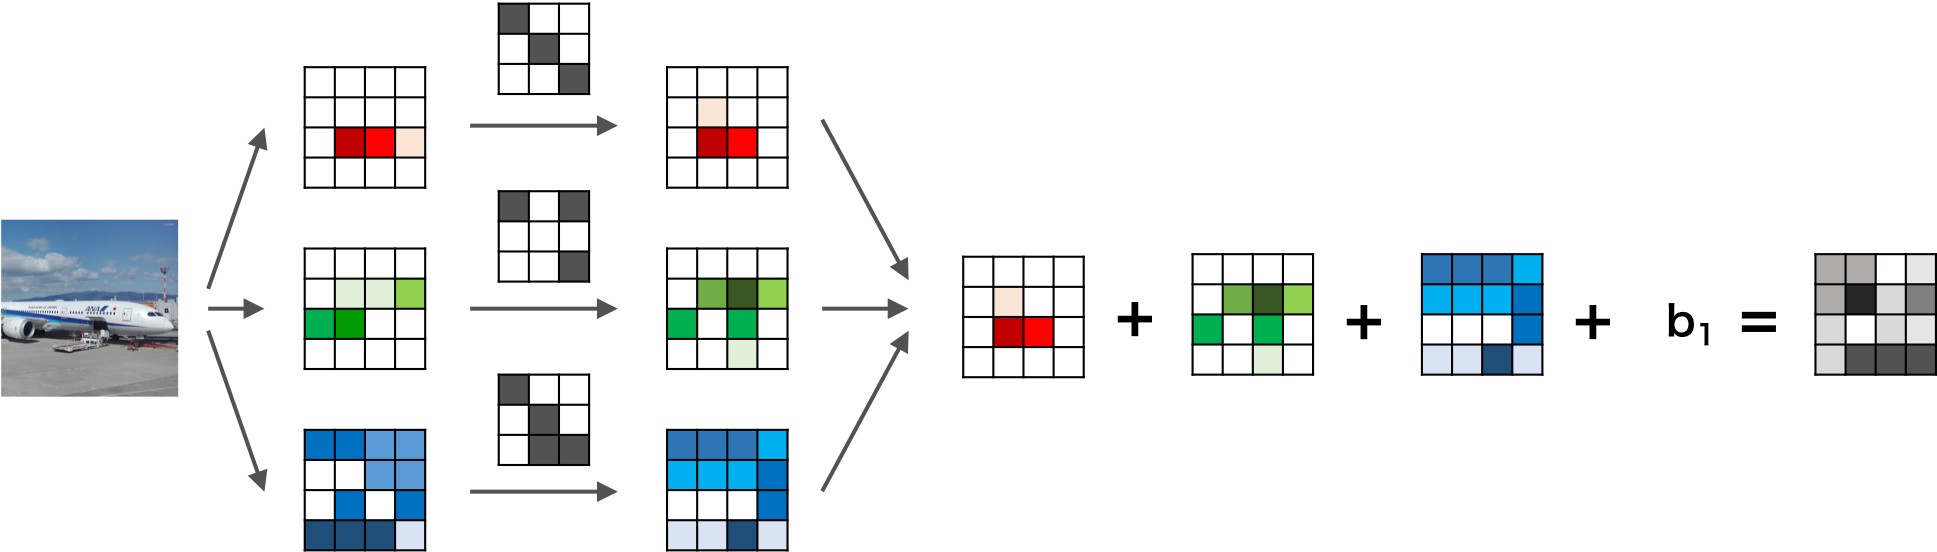 RGBカラー画像の畳み込みニューラルネットワークの畳み込み層の例1